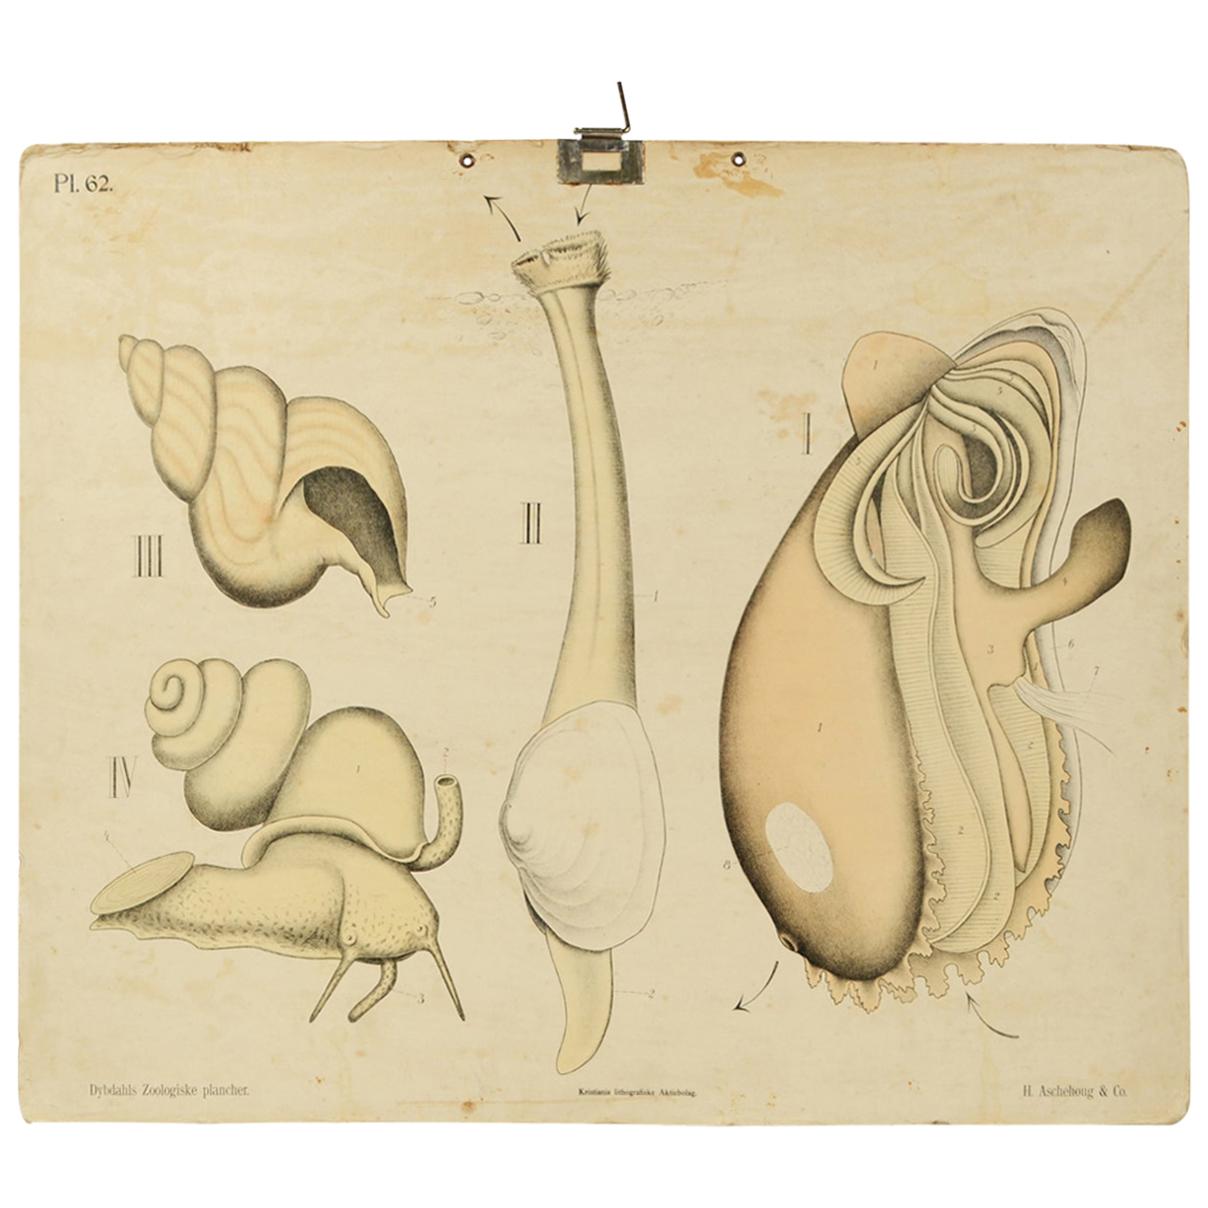 Zoologische Lithographie von Molluscs aus dem Jahr 1925 auf Karton von H Aschehoug & Co Norwegen